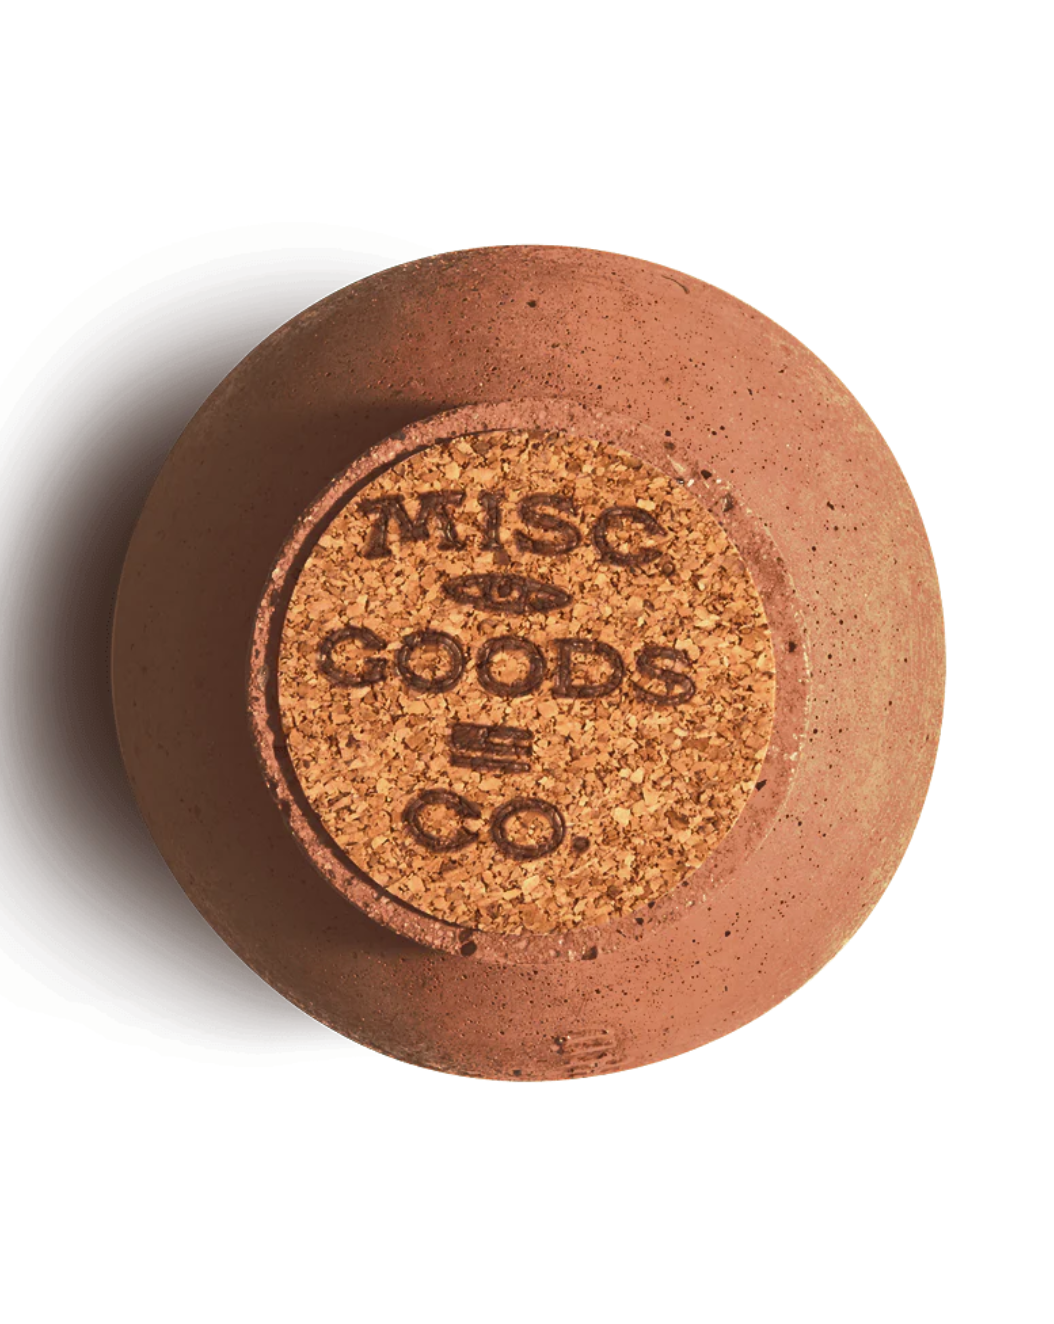 MISC Goods | Incense Holder | Terracotta